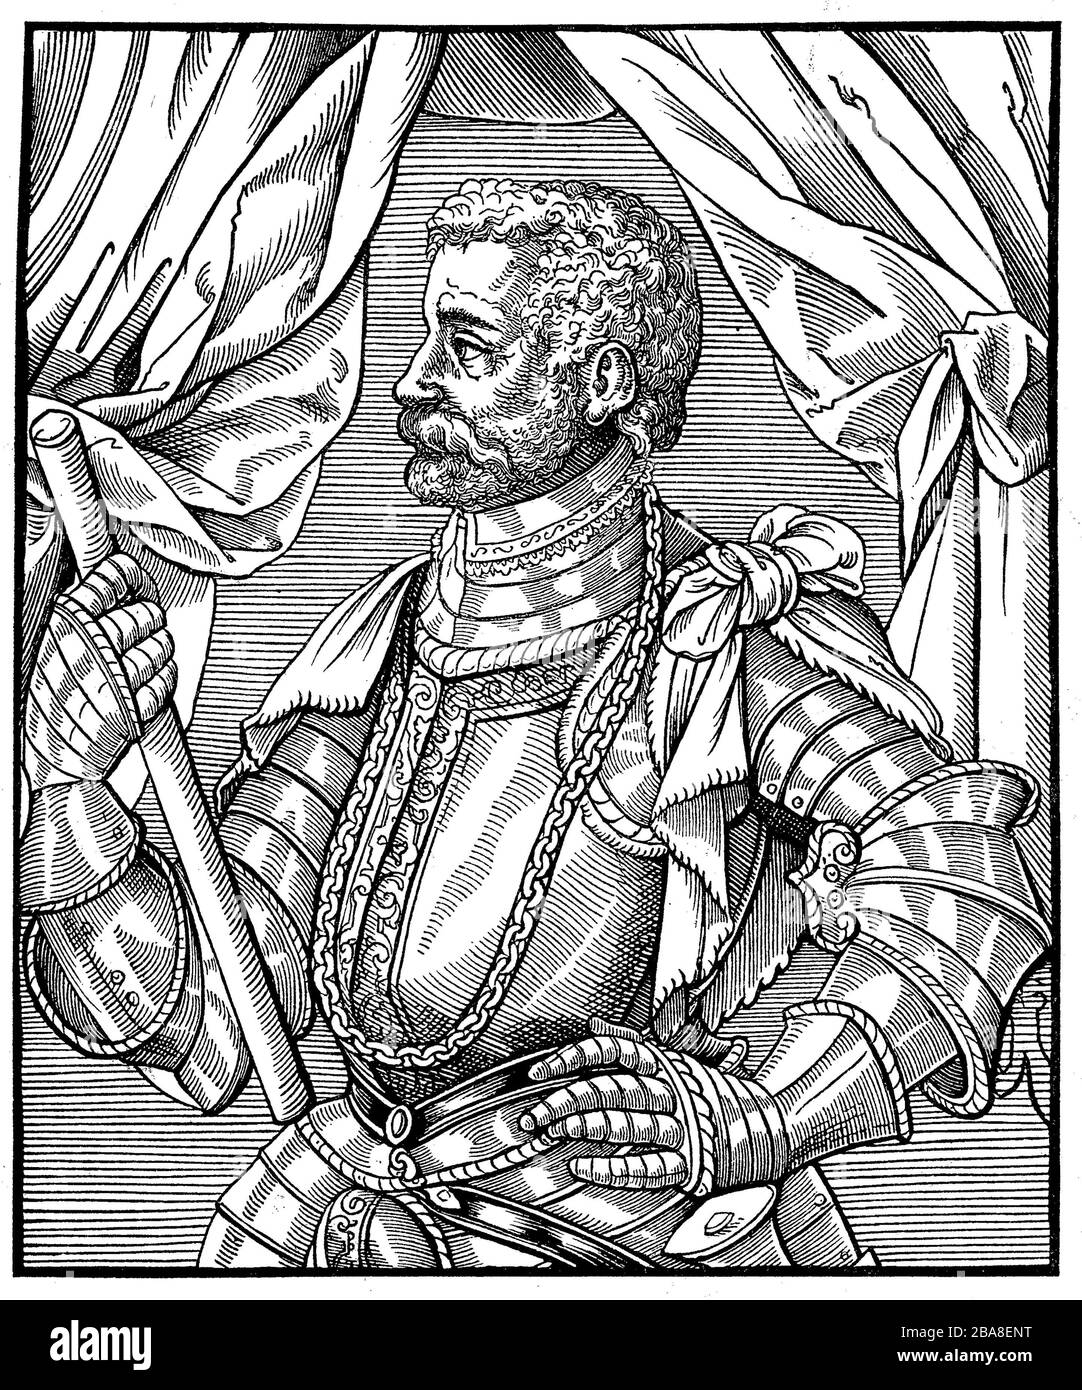 Jan Johann Zamoyski, 19 mars 1542 - 3 juin 1605, était un aristocrate polonais, un magnat, un fonctionnaire, un homme d'État et un grand herdsman dans la partie polonaise de la première République de Pologne-Lituanie, ainsi qu'un recteur temporaire de l'Université de Padoue / Jan Johann Zamoyski, 19. März 1542 - 3. Juni 1605, war ein polnischer Aristokrat, Magnat, Beamter im Staatsdienst, Staatsmann und Großhetman im polnischen Teil der I. Republik Polen-Litauen, außerdem zeitweise Rektor Universität von Padua, Historisch, amélioration de la reproduction numérique d'un original du 19ème siècle / Redukale Banque D'Images